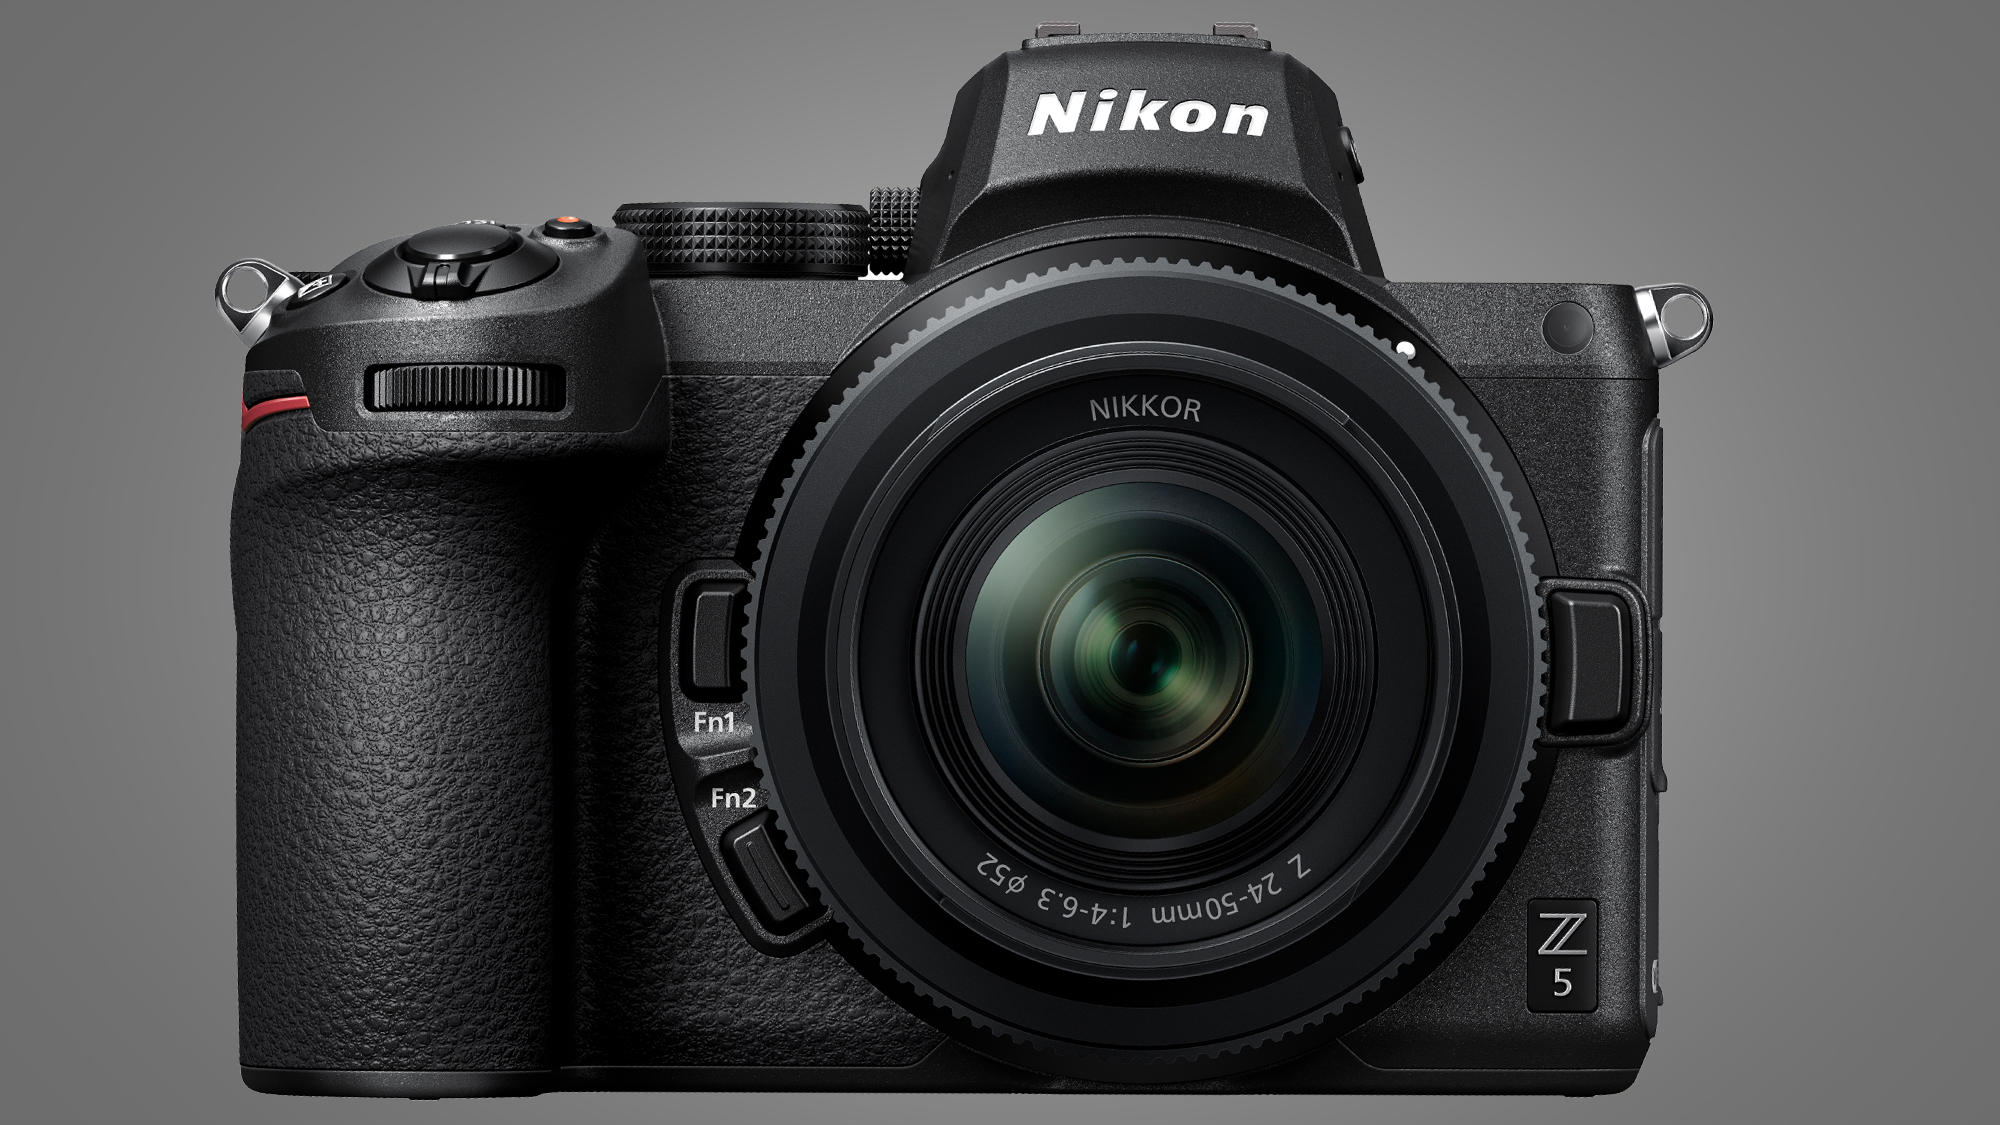 Nikon Z5 arrives for beginners with world’s smallest full-frame zoom lens